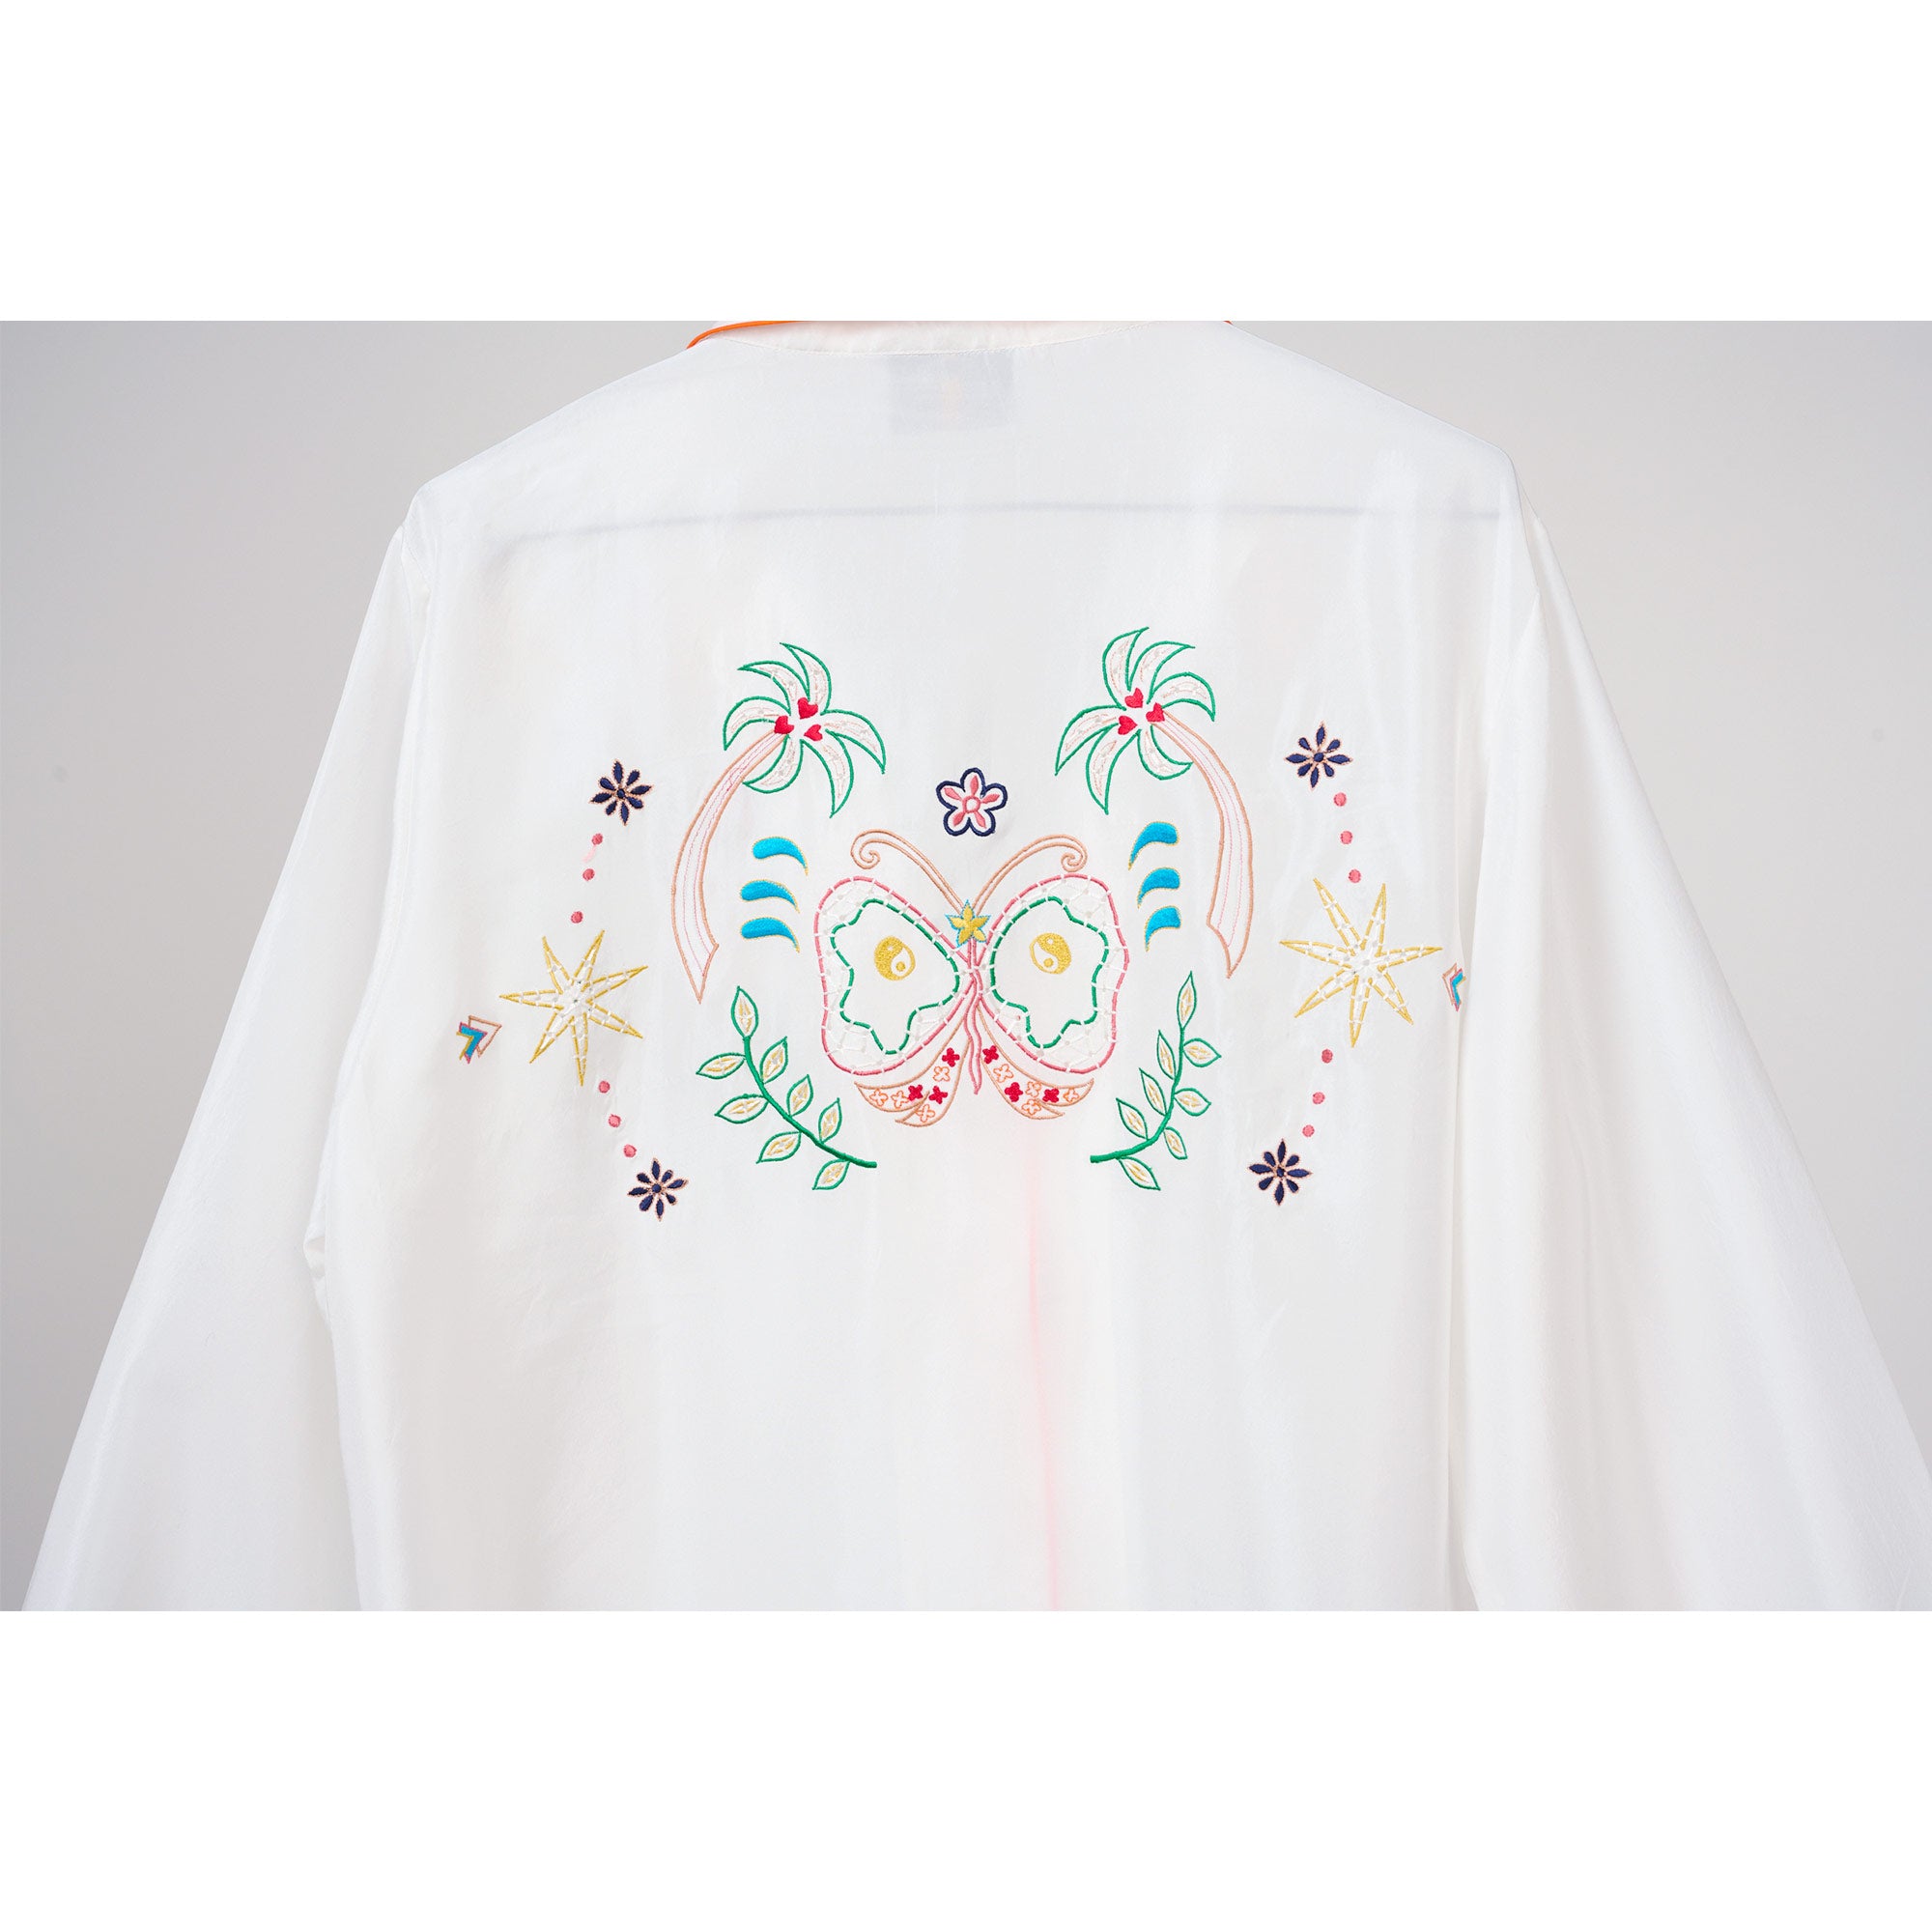 Monoki_pajama_white_set_embroidery_detail